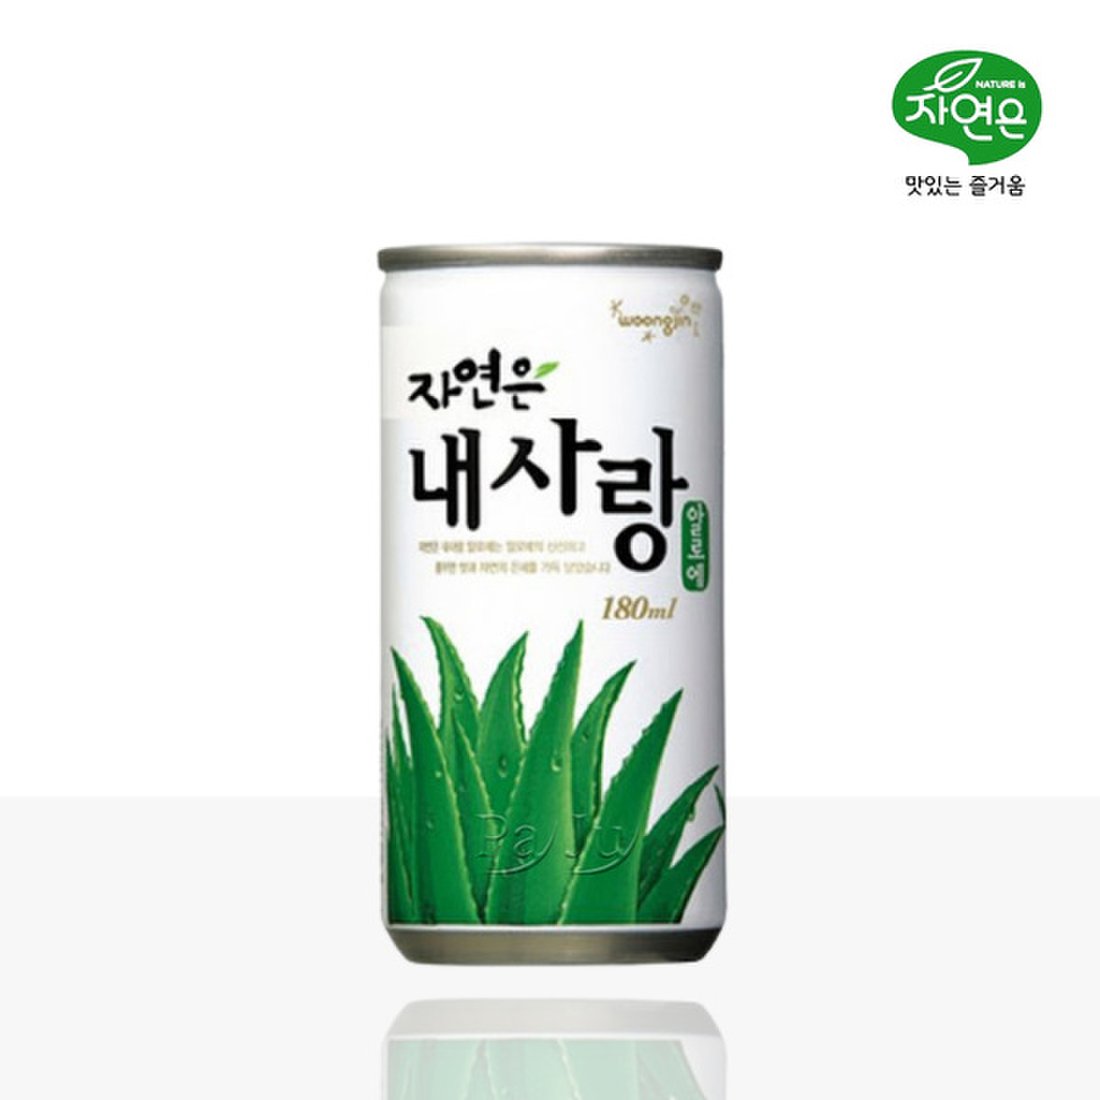 Woongjin Aloe Juice 180ml Can/웅진 자연은 내사랑 알로애 180ml